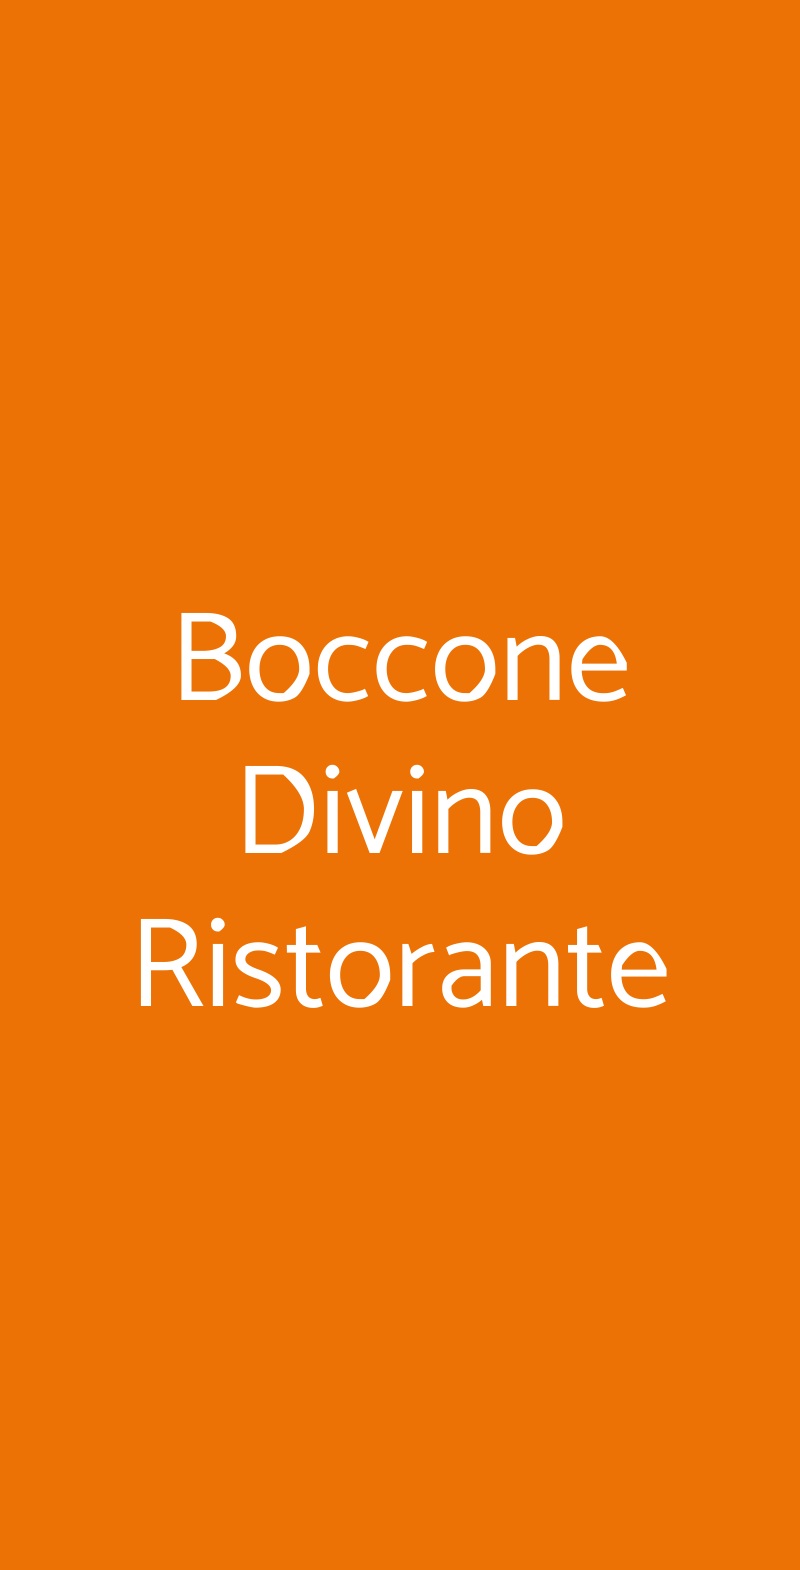 Boccone Divino Ristorante Milano menù 1 pagina